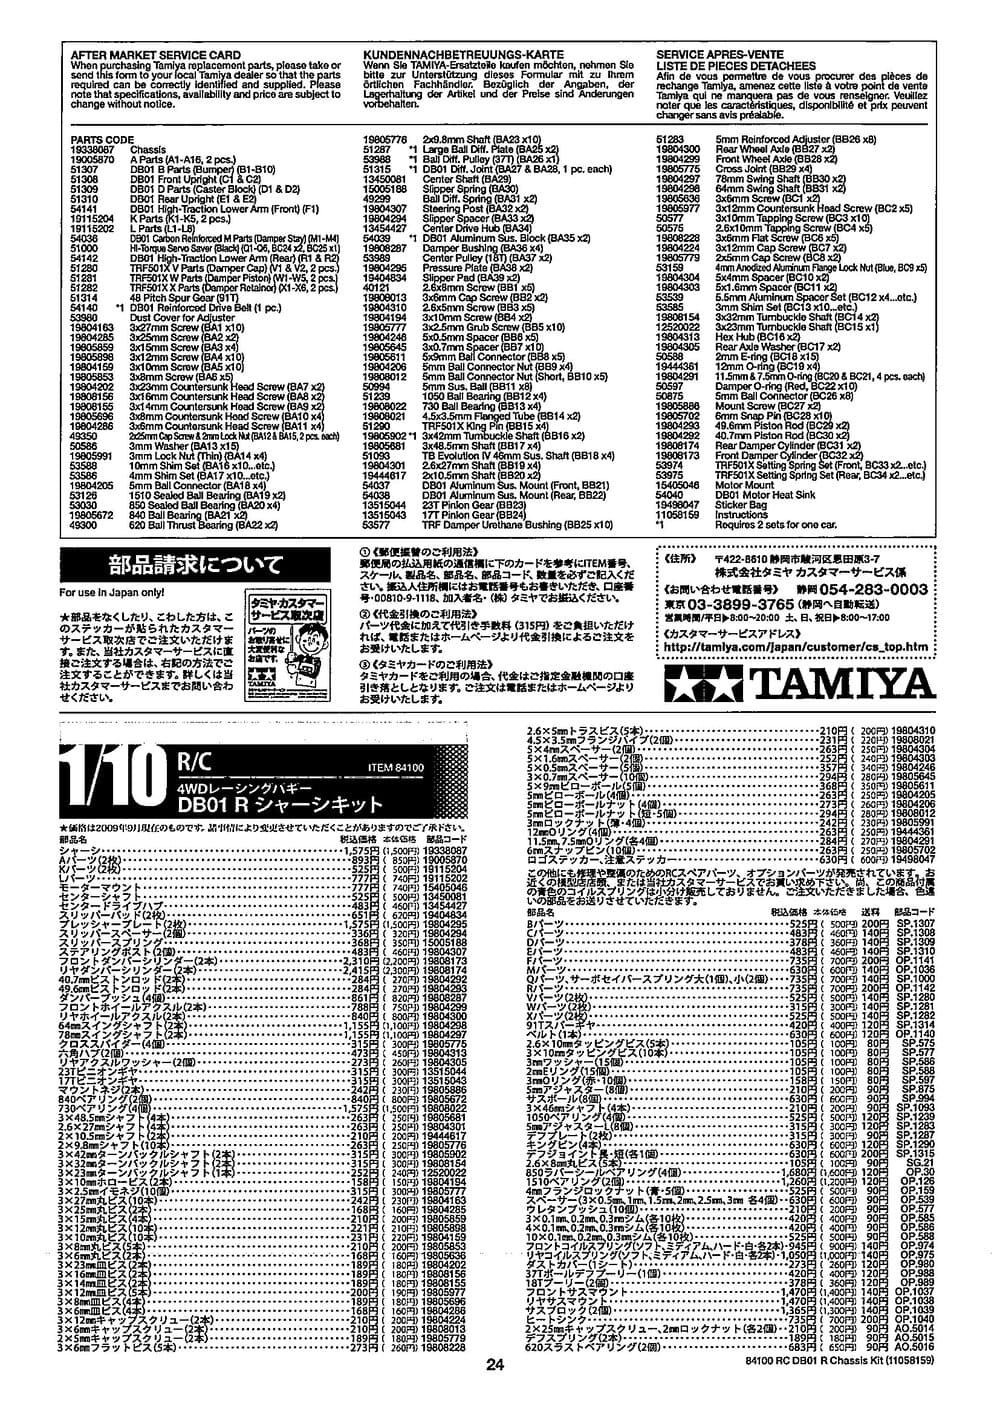 Tamiya - DB-01R Chassis - Manual - Page 24